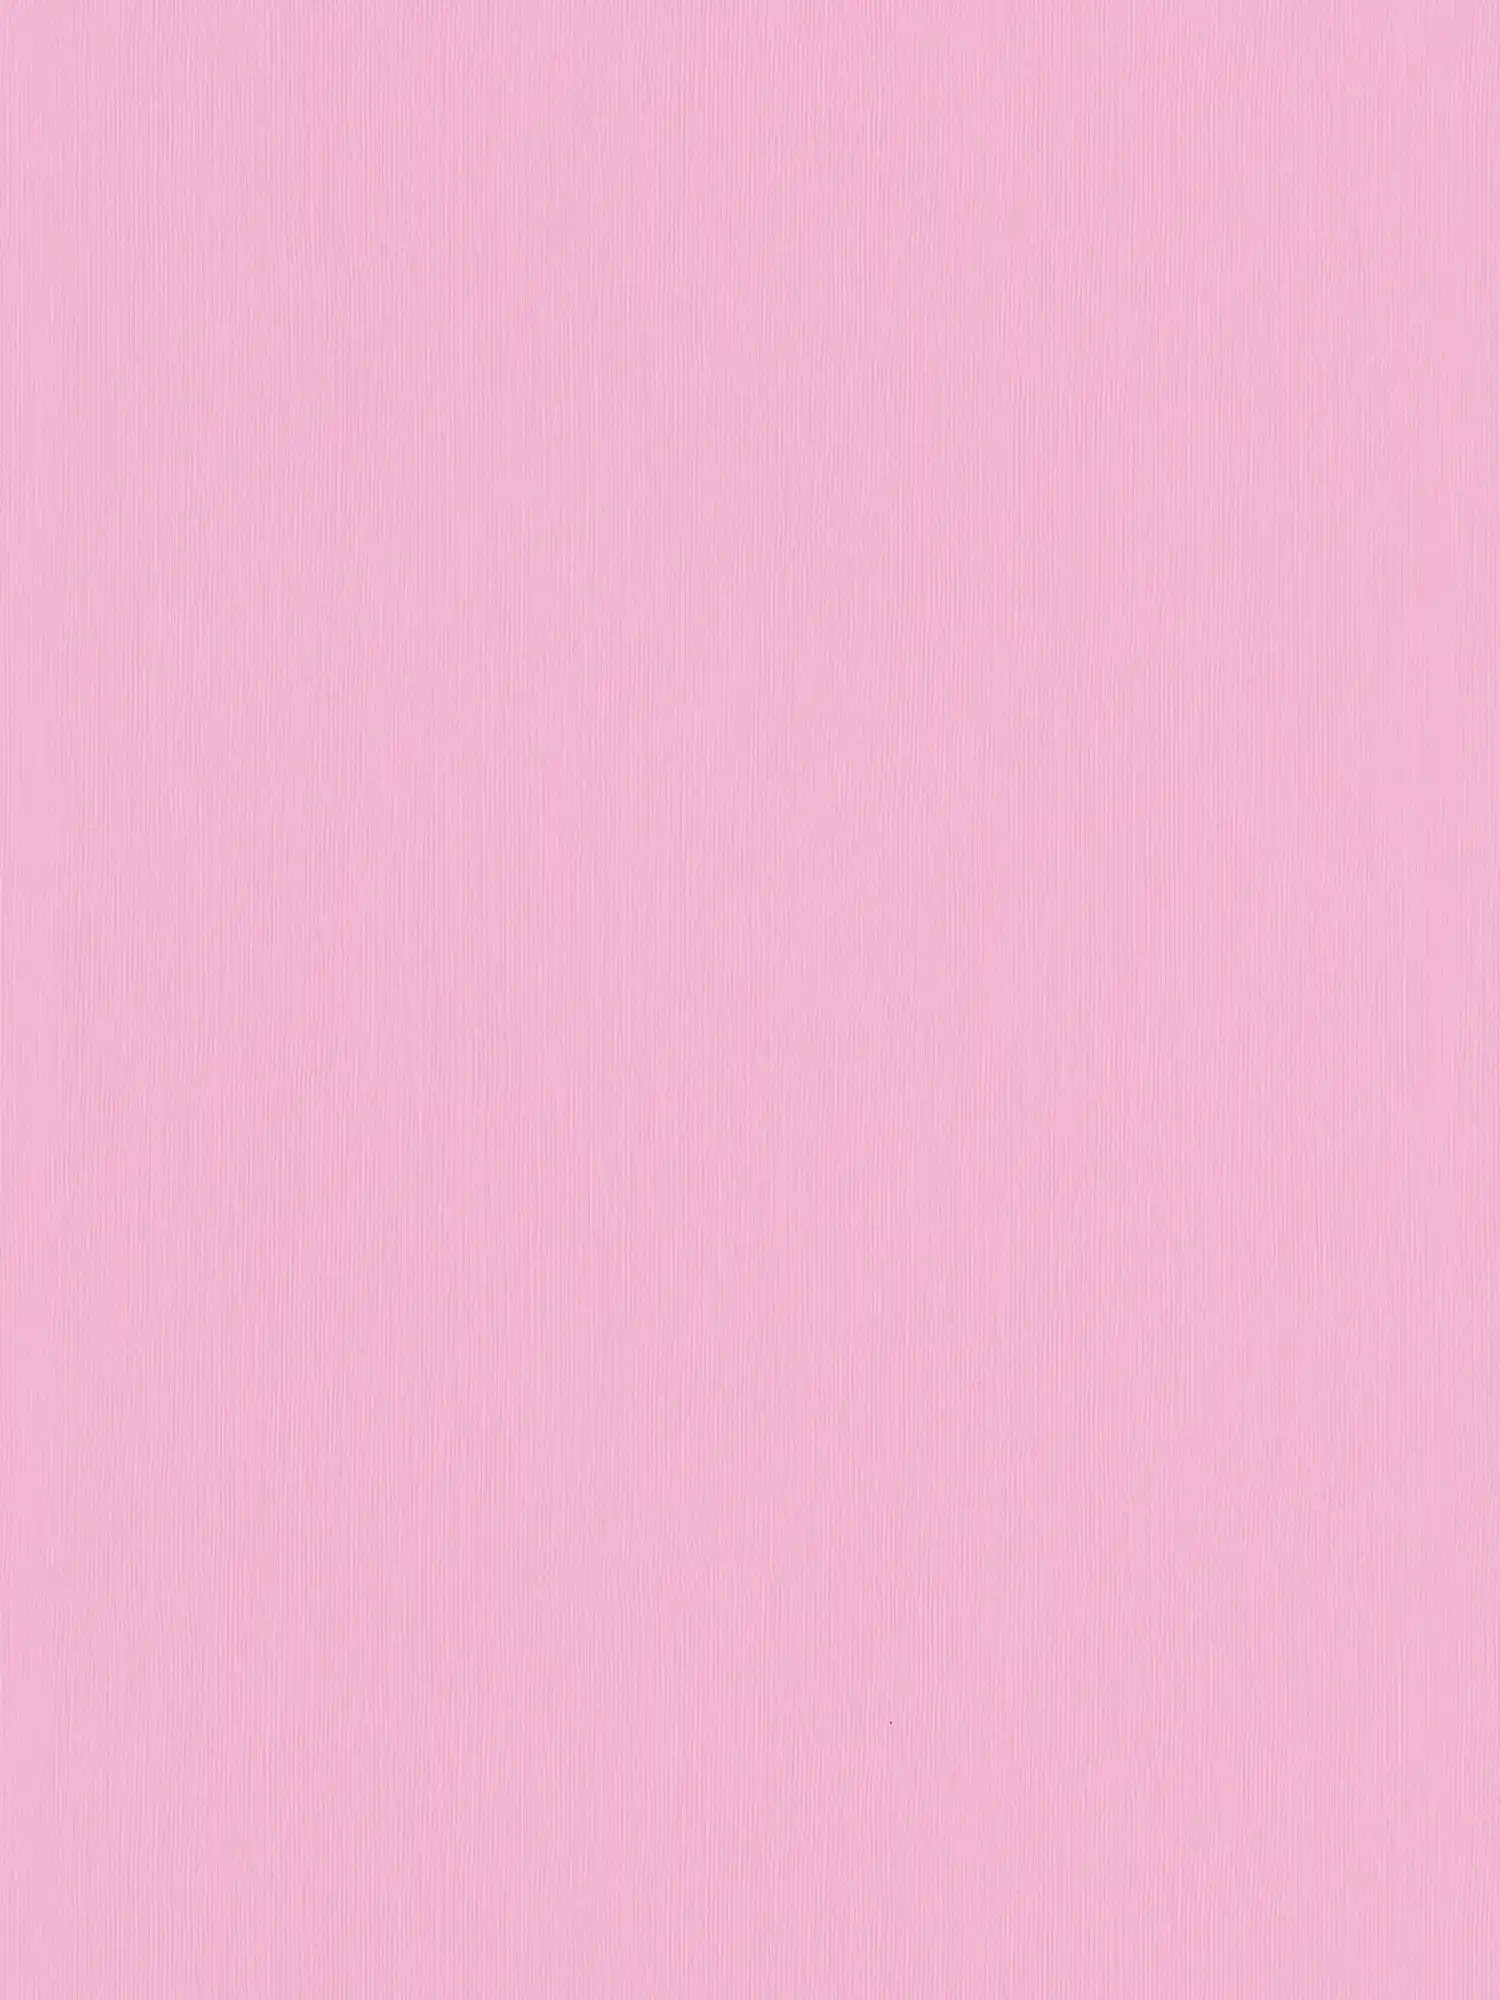 Papel pintado rosa liso con textura en relieve - Rosa
